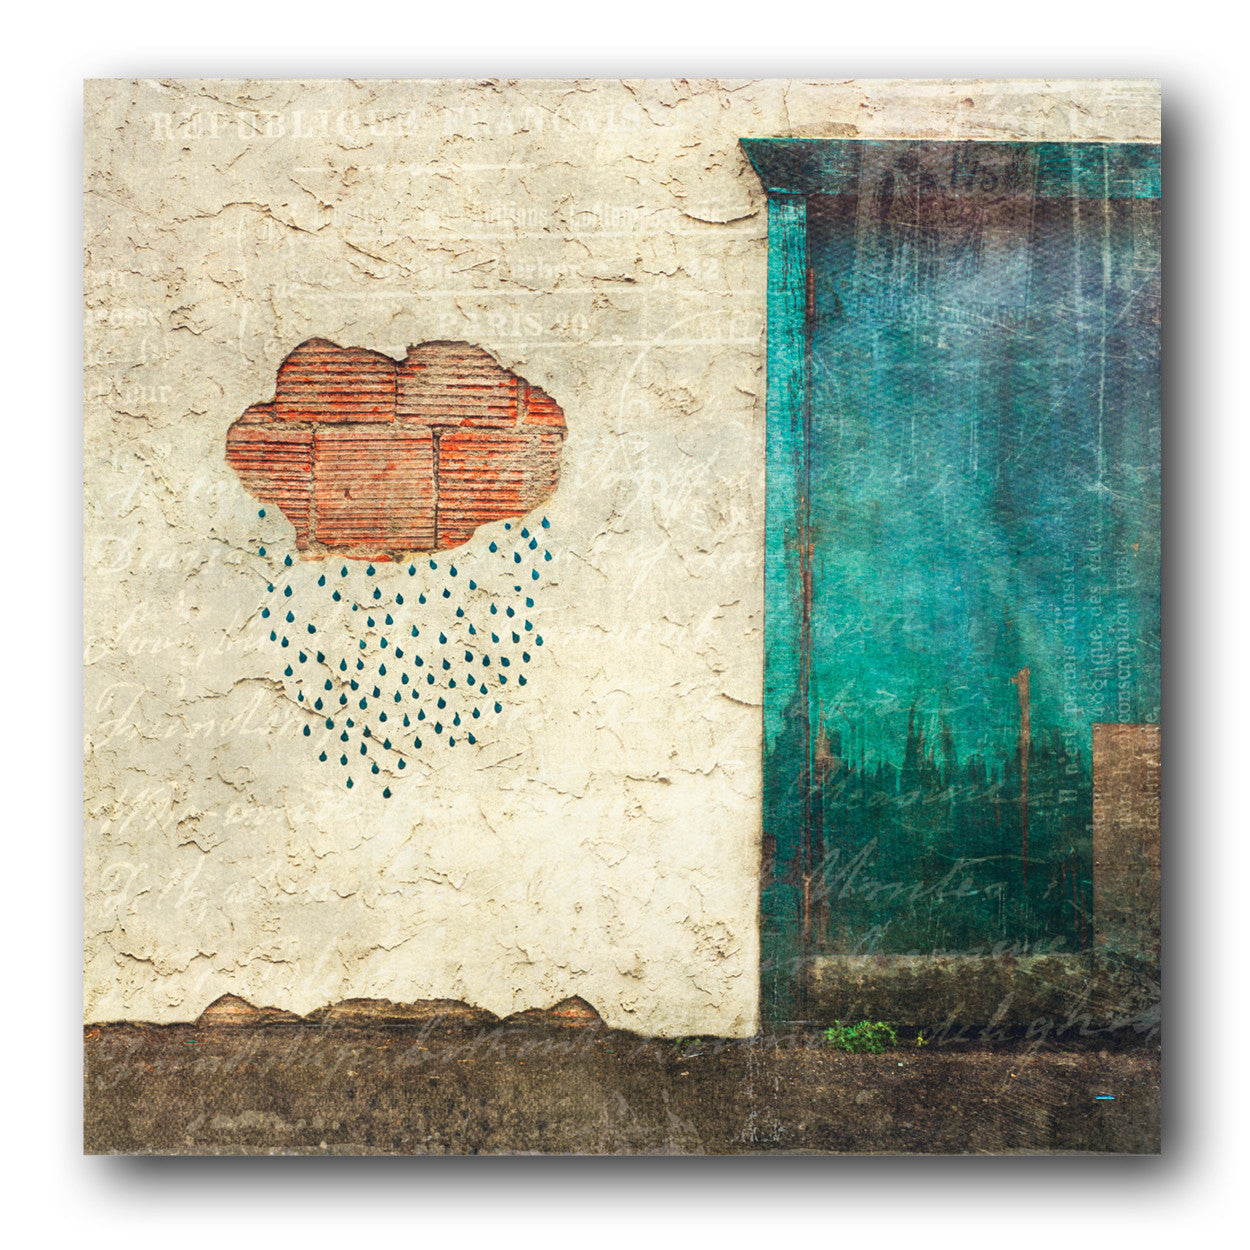 Arte callejero de nube de lluvia<br> Banff Alta<br> Impresión cromogénica de bellas artes de archivo